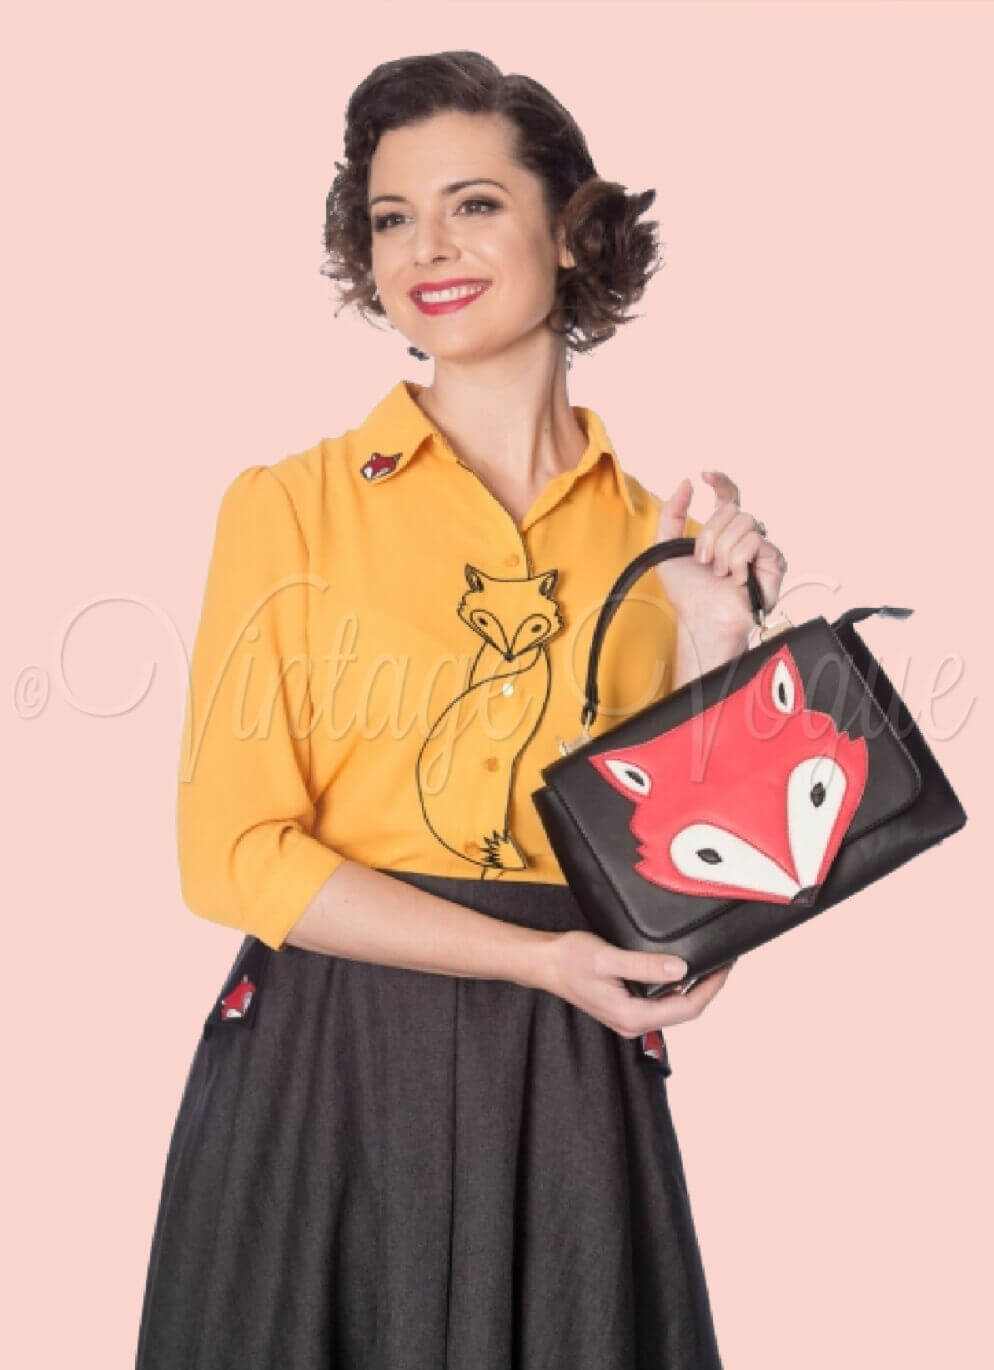 Banned Vintage Retro Fuchs Handtasche Foxy Bag in Schwarz & Rot